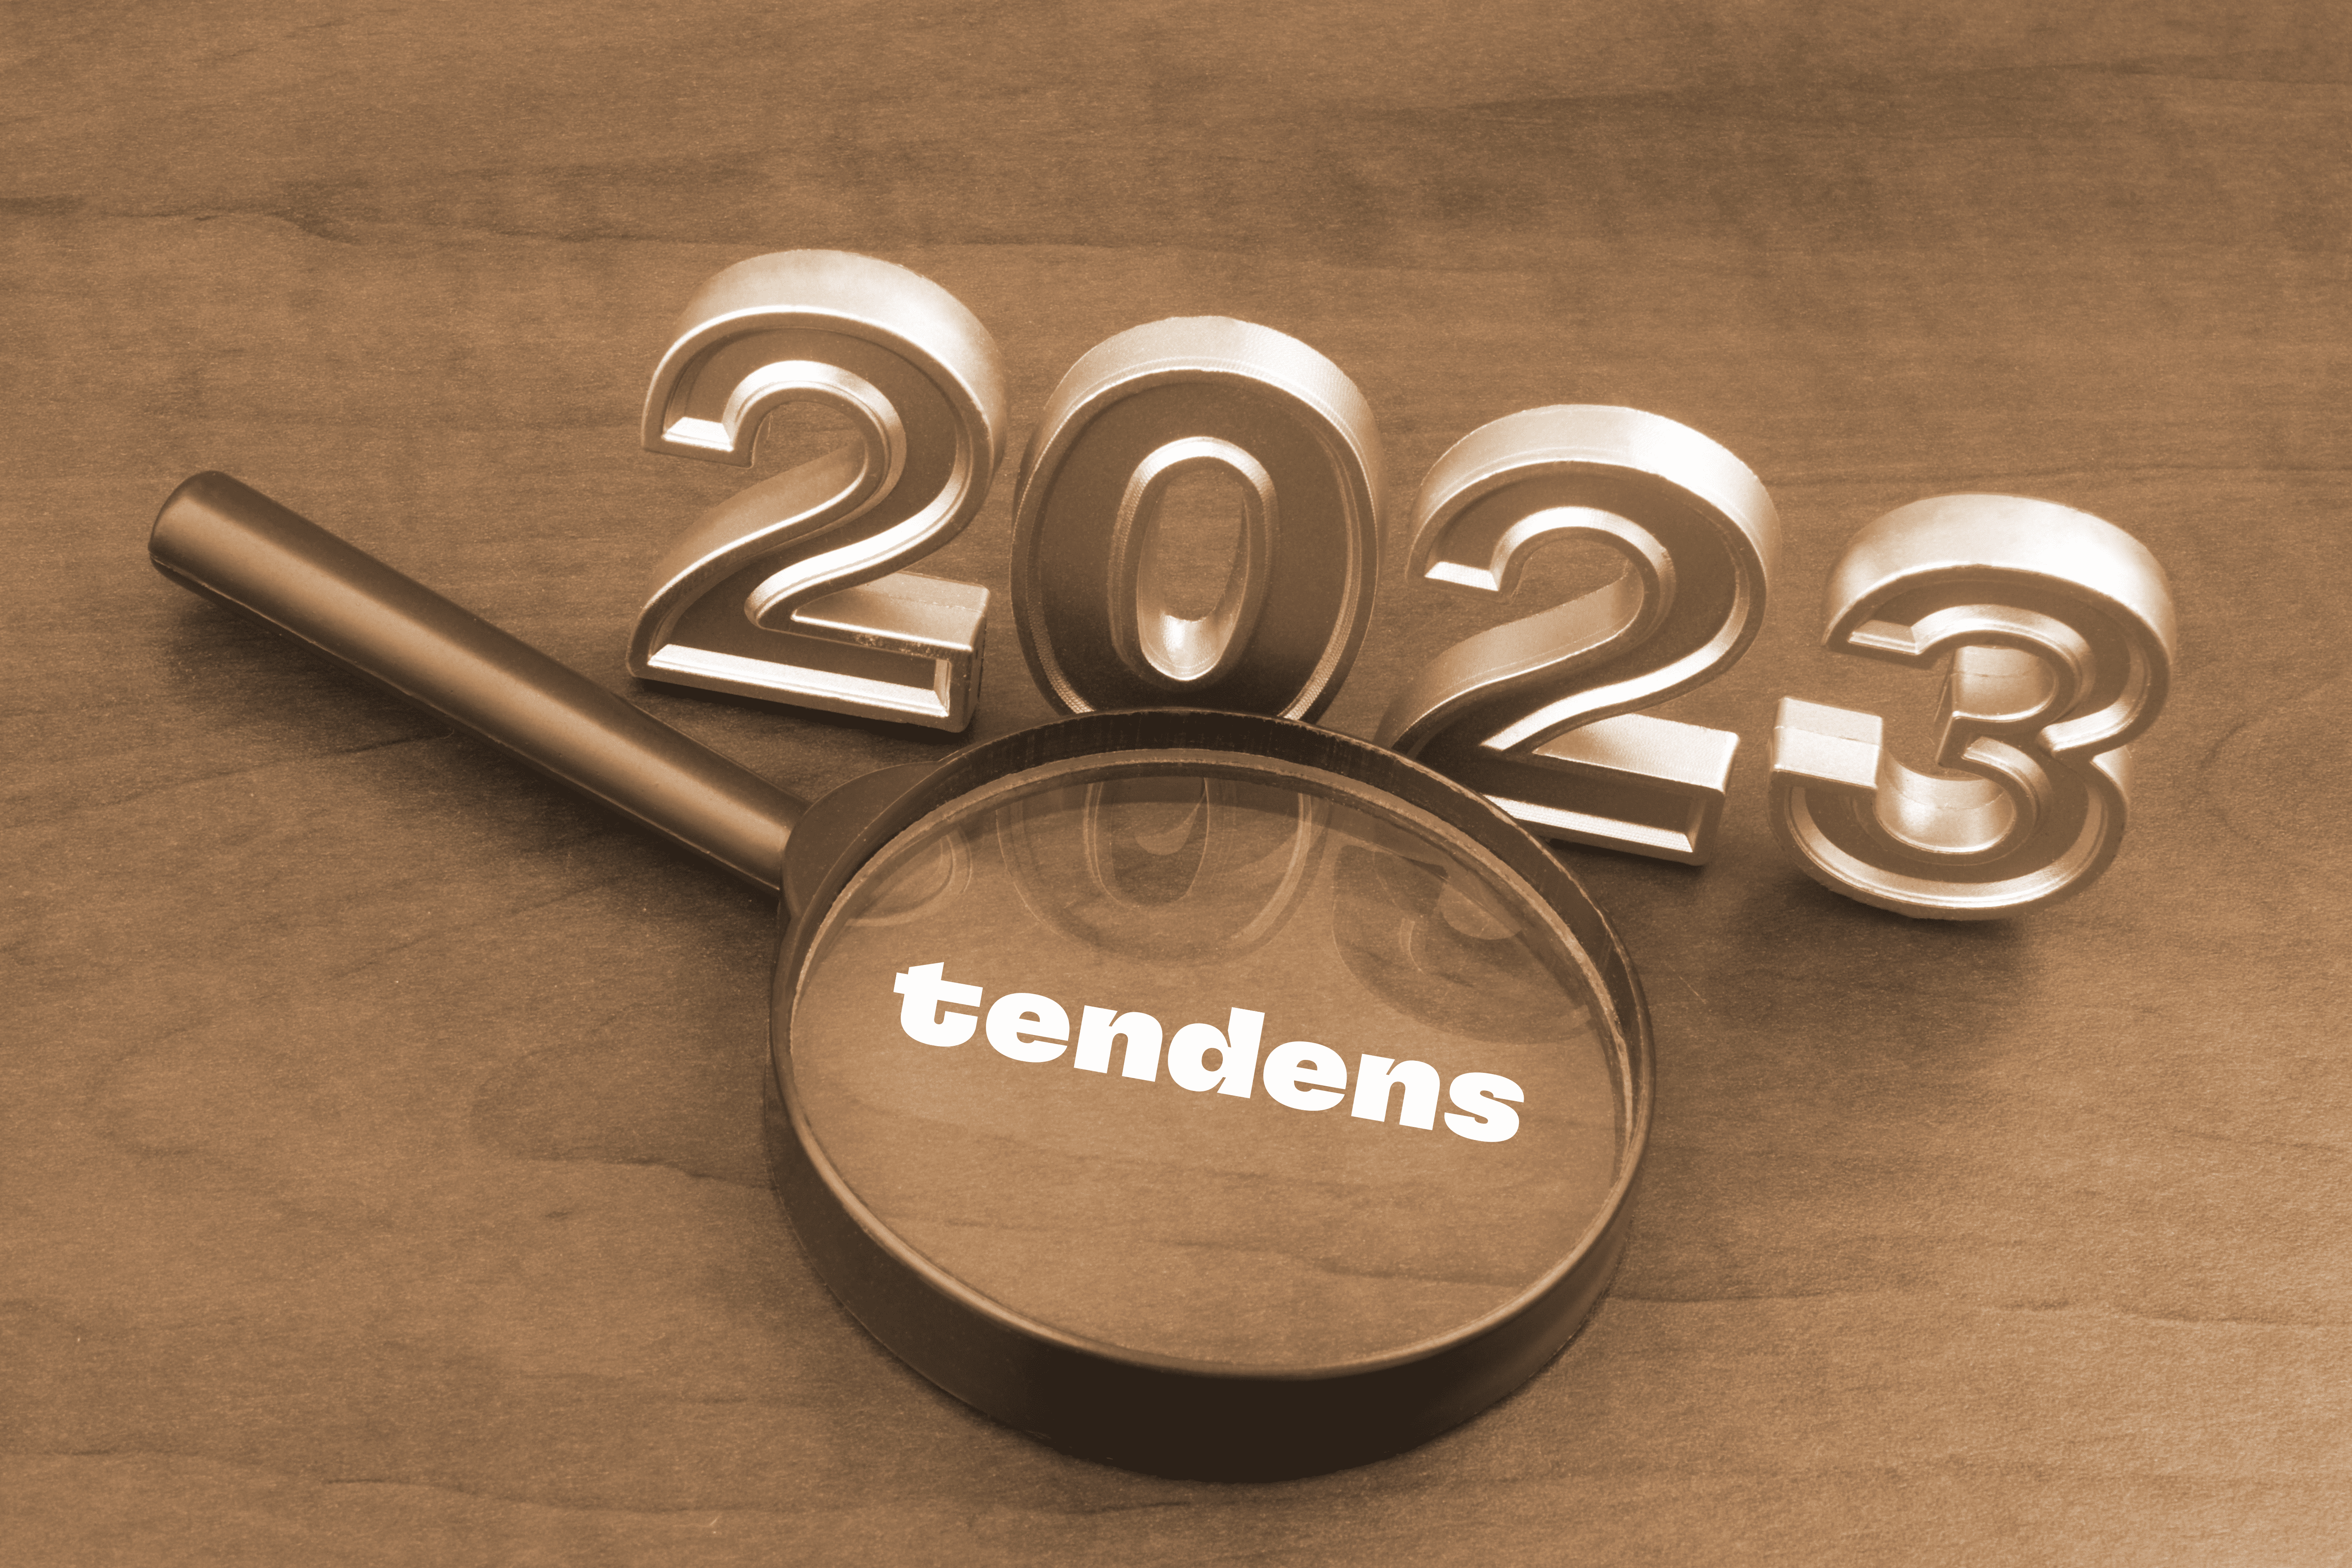 Årstallet 2023 vises i gullskrift, sammen med teksten Tendens inni et forstørelsesglass